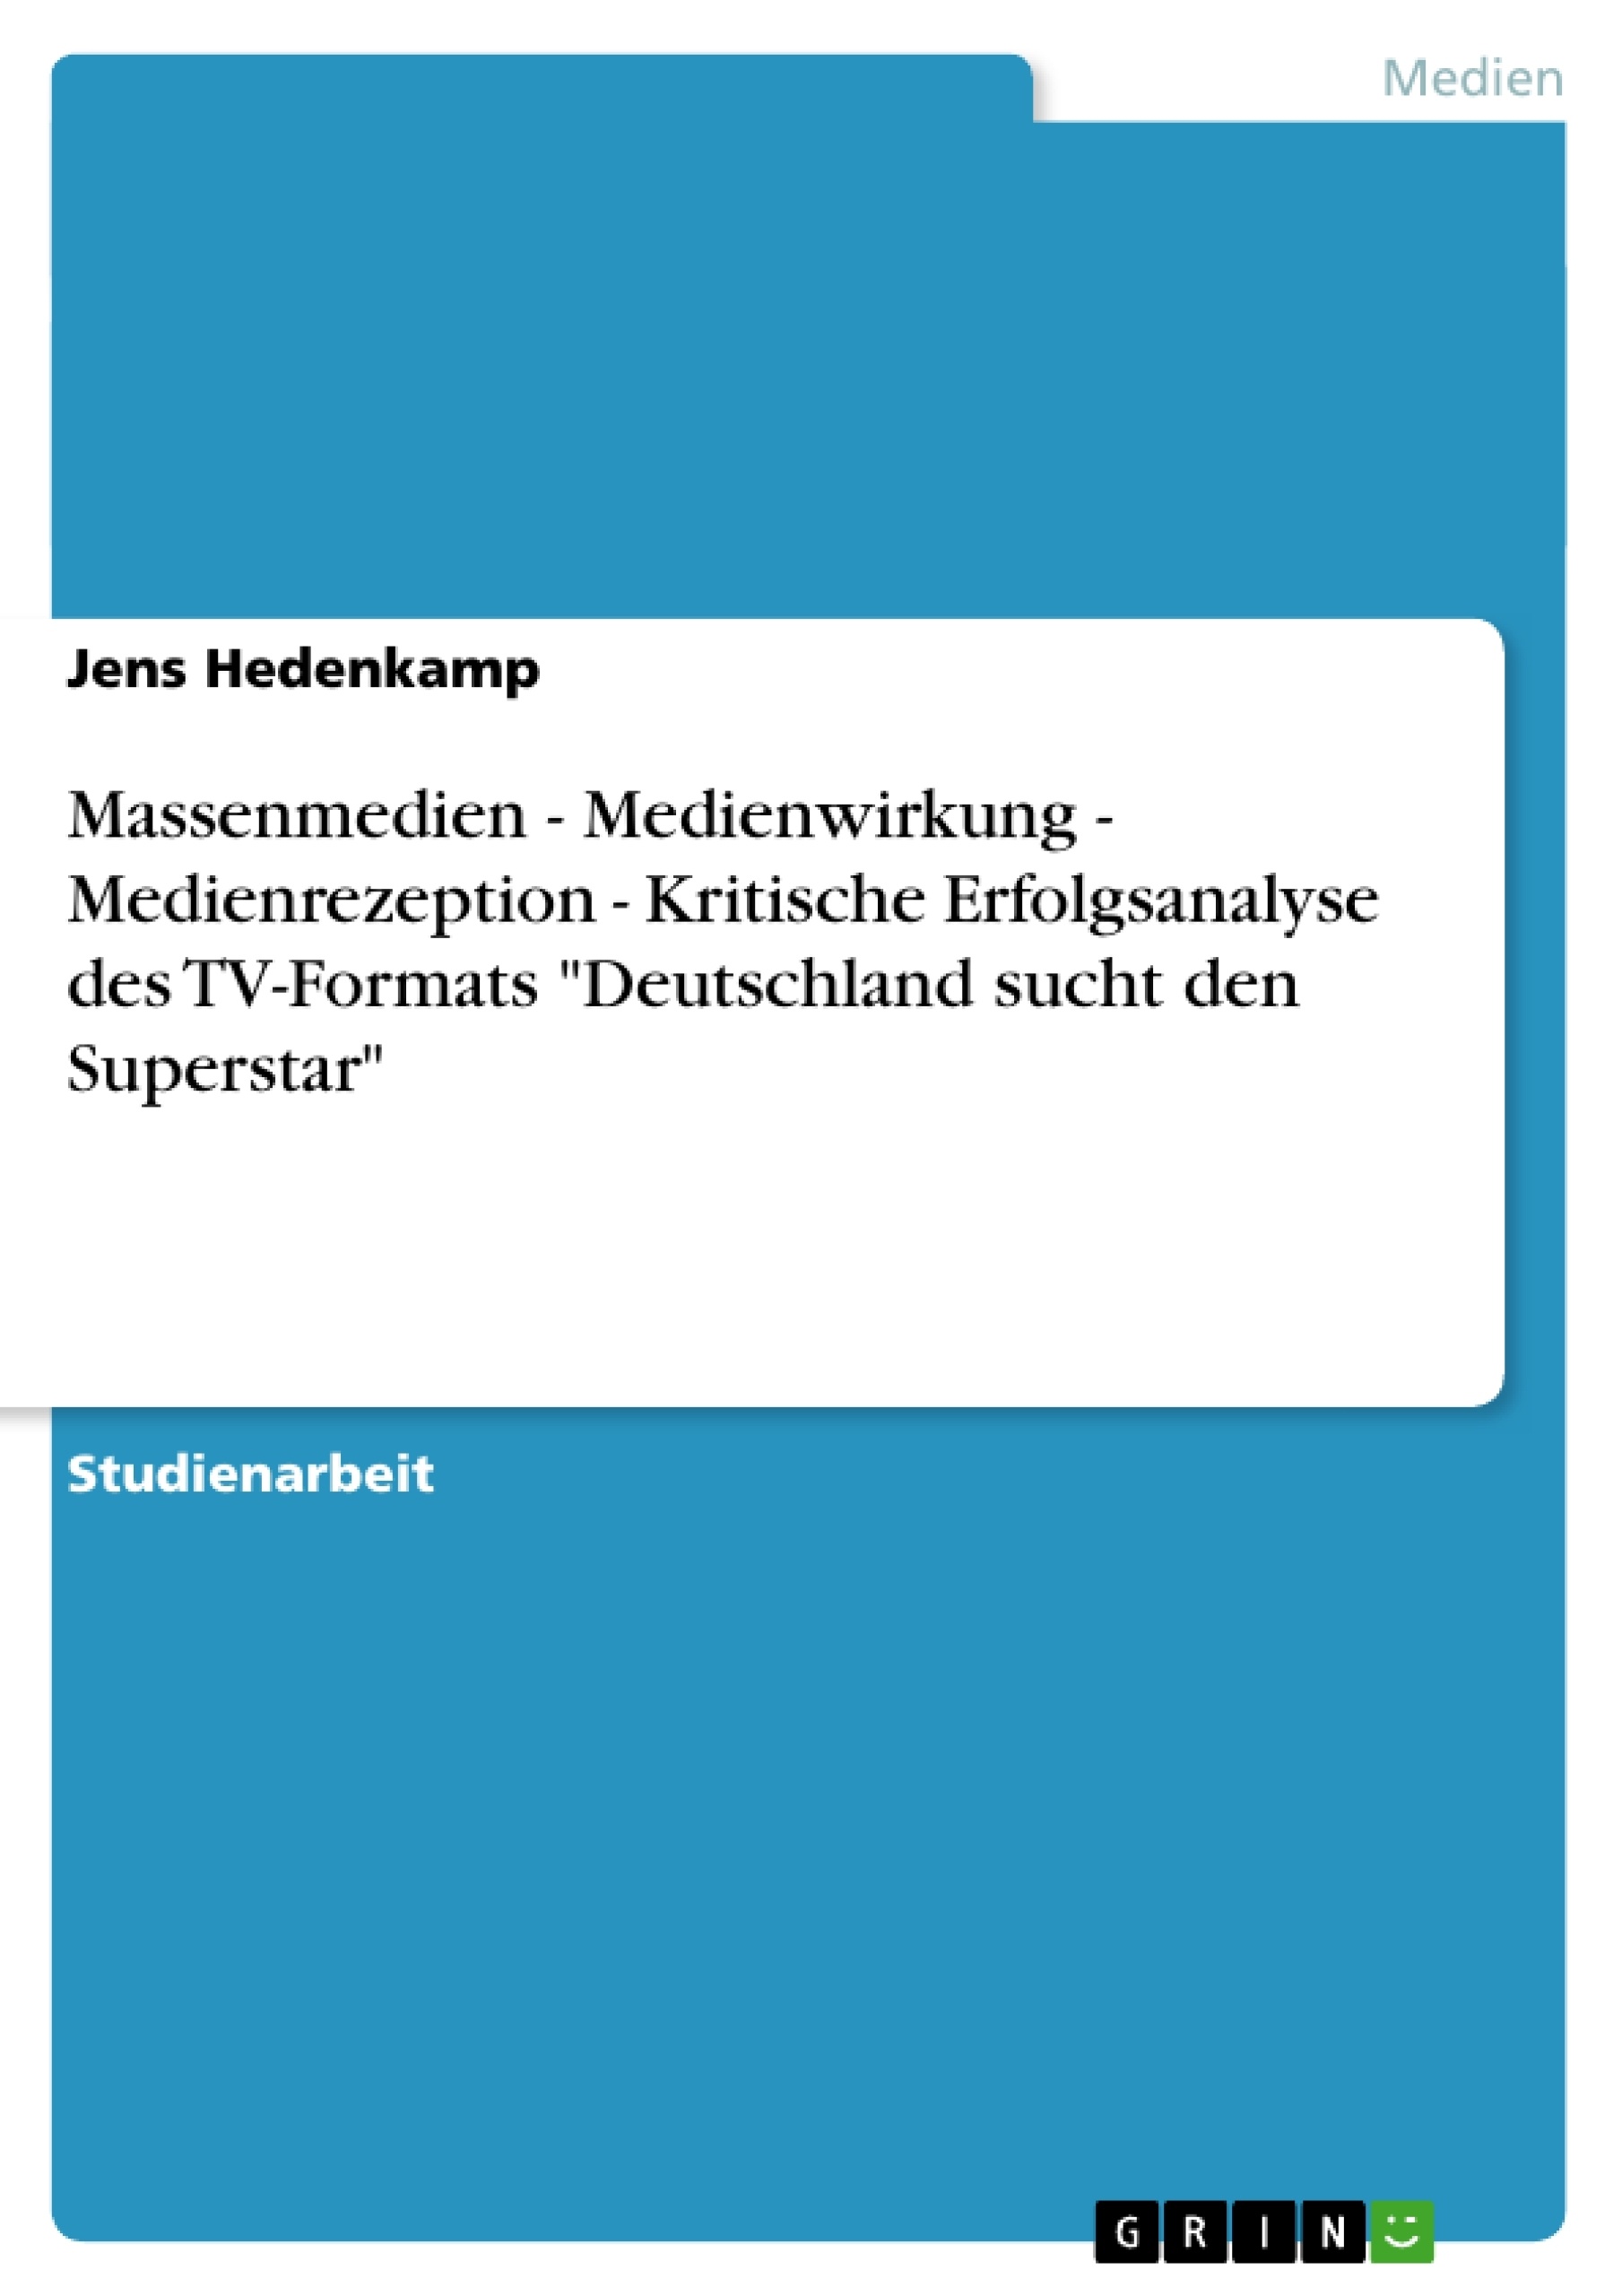 Titel: Massenmedien - Medienwirkung - Medienrezeption - Kritische Erfolgsanalyse des TV-Formats "Deutschland sucht den Superstar"